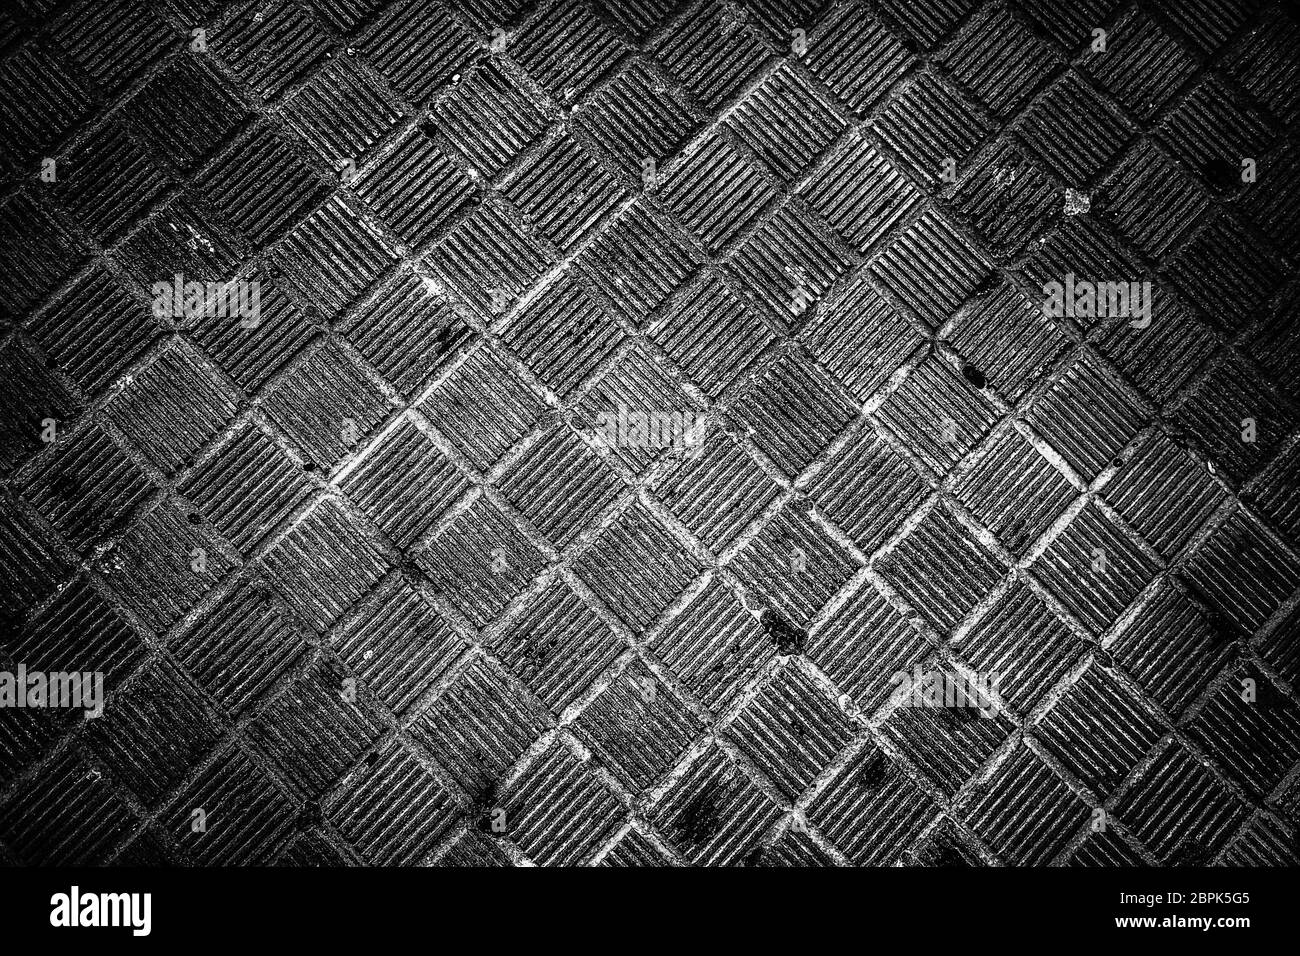 Pietre per pavimentazione in strada, dettaglio sul marciapiede per i pedoni Foto Stock